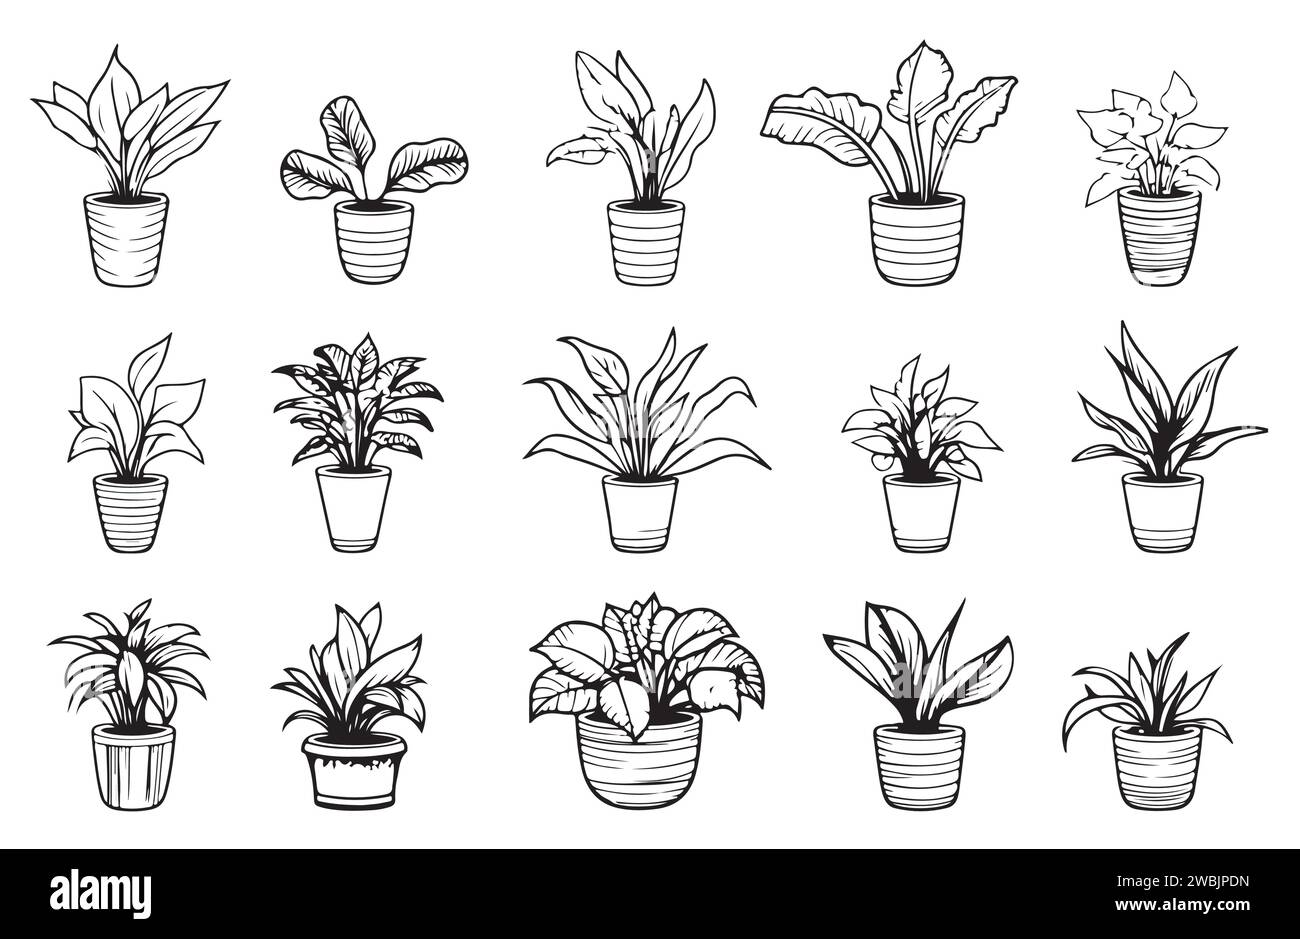 Ensemble de dessins de contour de plantes d'intérieur. Fleurs exotiques d'intérieur en pots Line art. Dracaena, ficus, cactus, plante de serpent pour les plans d'intérieur de la maison, design. Vect Illustration de Vecteur